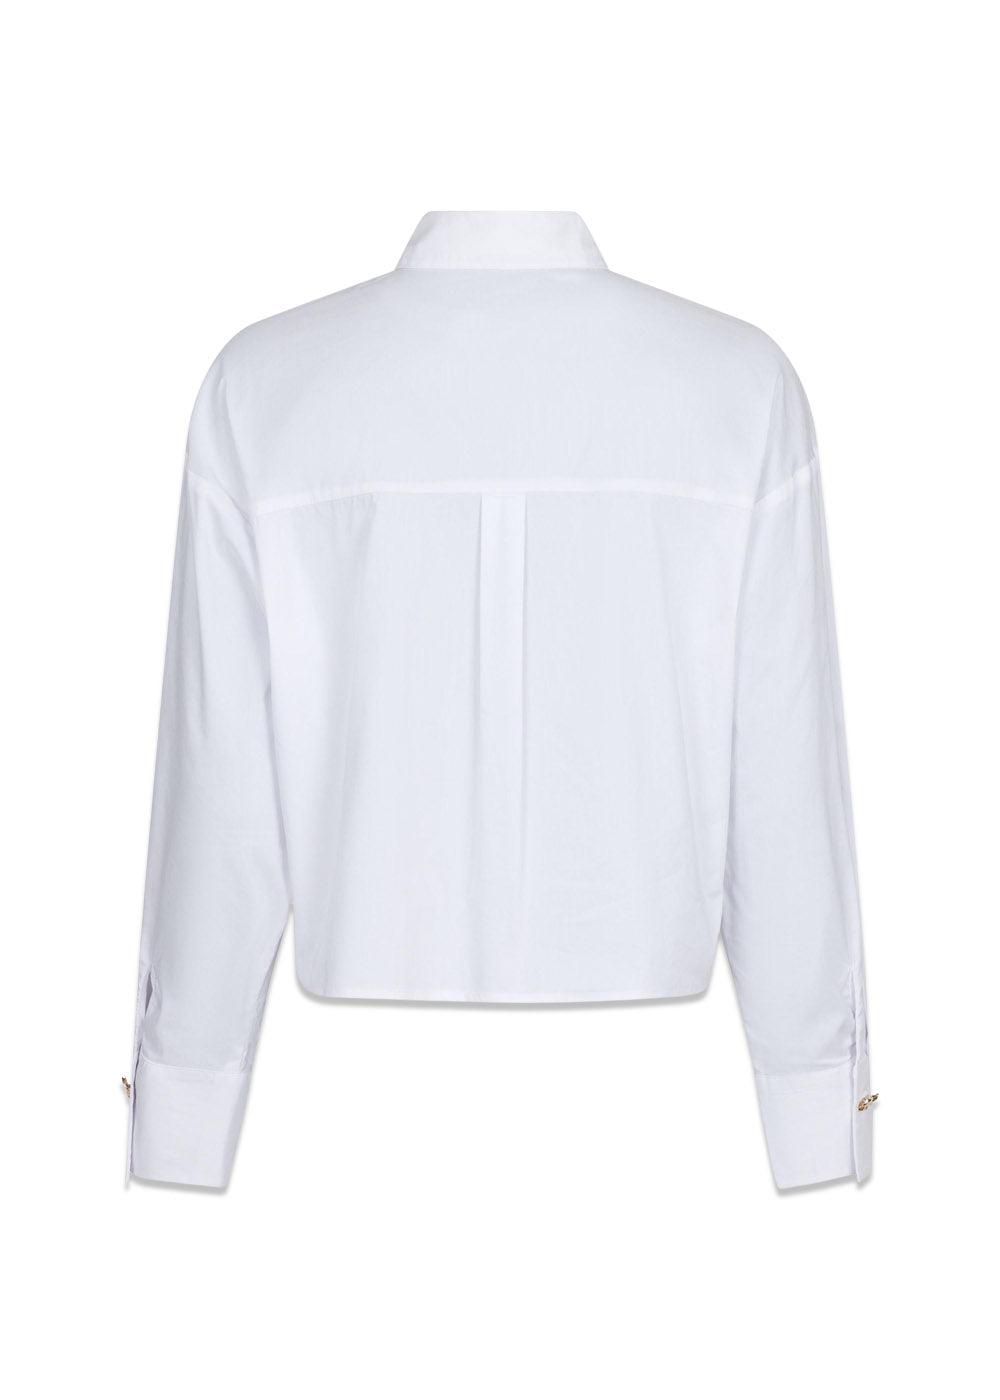 Wisla Poplin Shirt - White